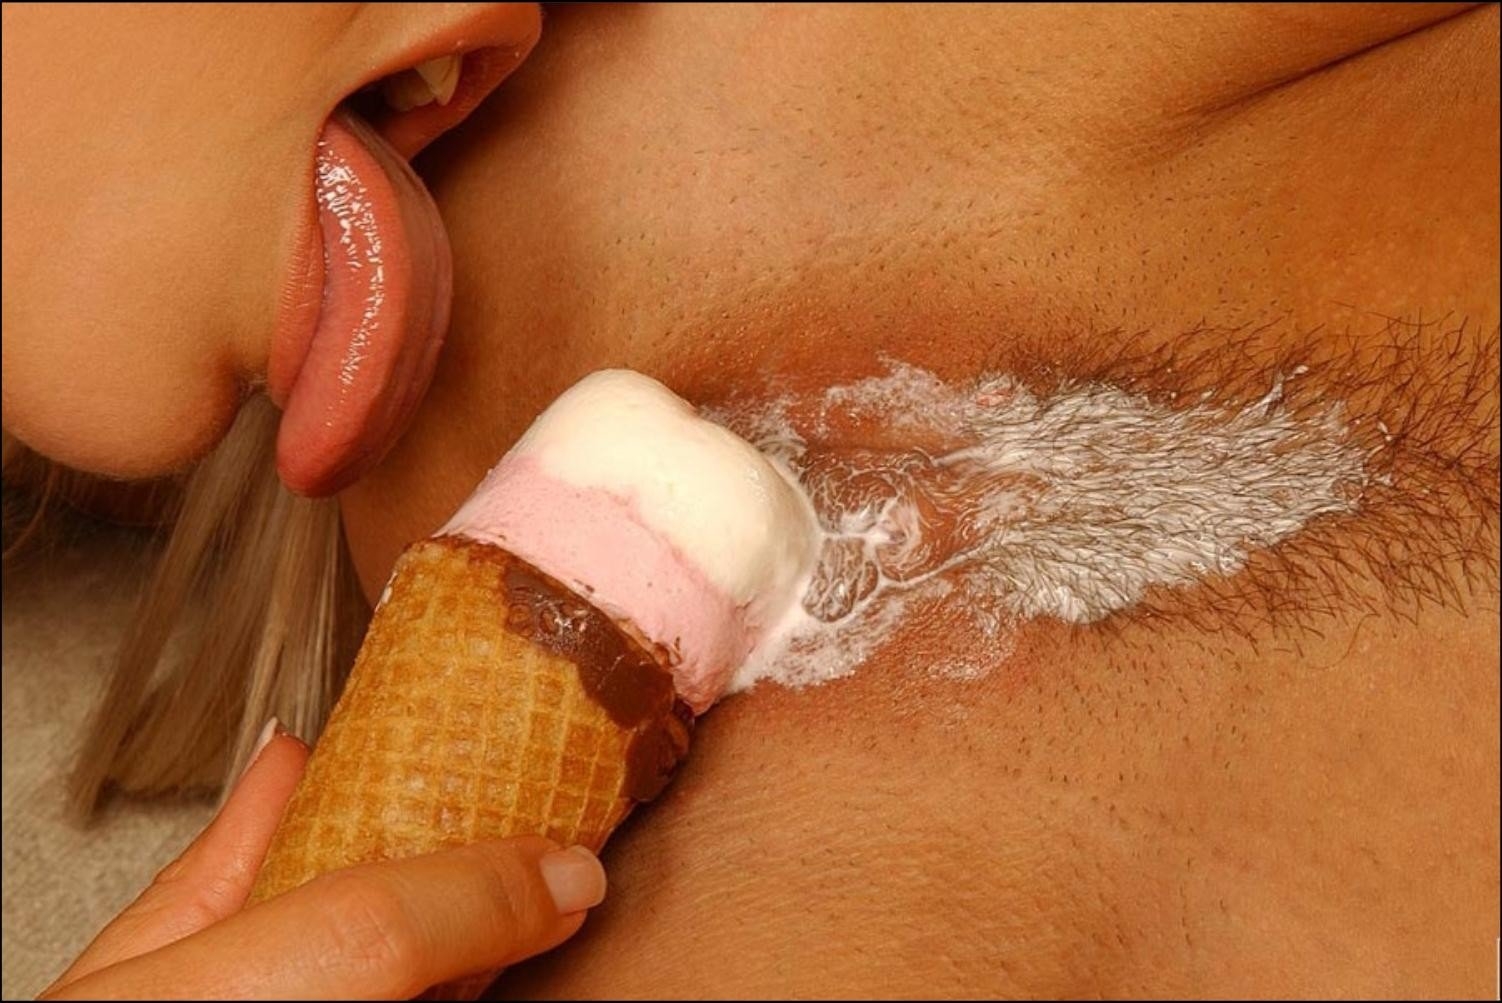 Porn - With cream (72 photos). 